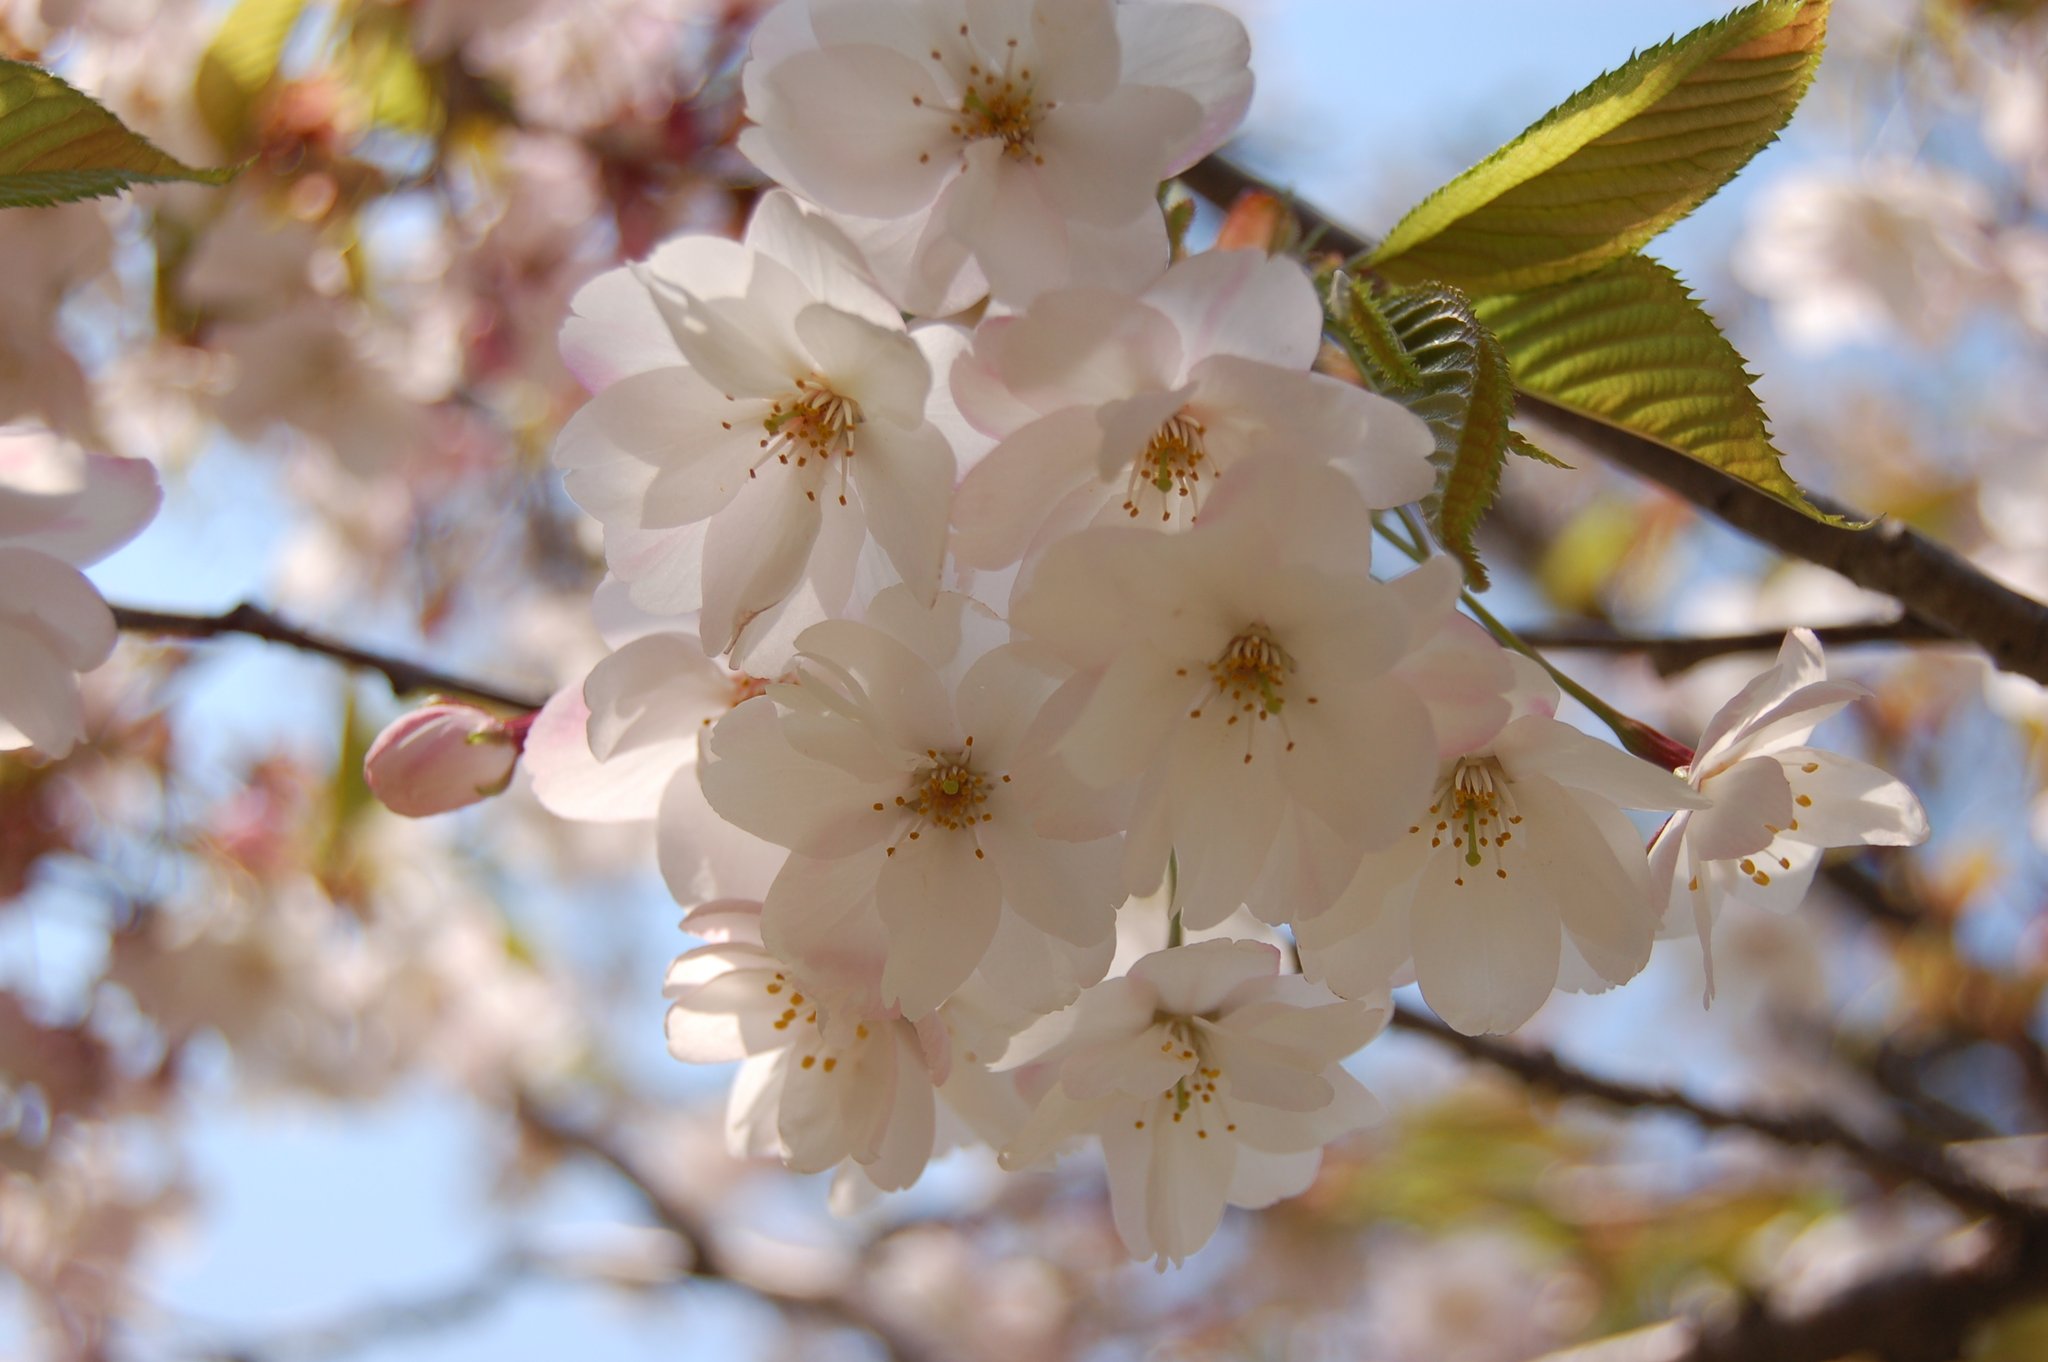 日本の桜 森町の桜 桜は青葉ヶ丘公園にある まだ 名前のついていない 森a と 仮称で呼ばれる桜ですが 白が美しい八重桜です 今はピンクの桜より白い八重桜が 桜会 でも ブームになってます T Co Fzrh4ix6zu Twitter